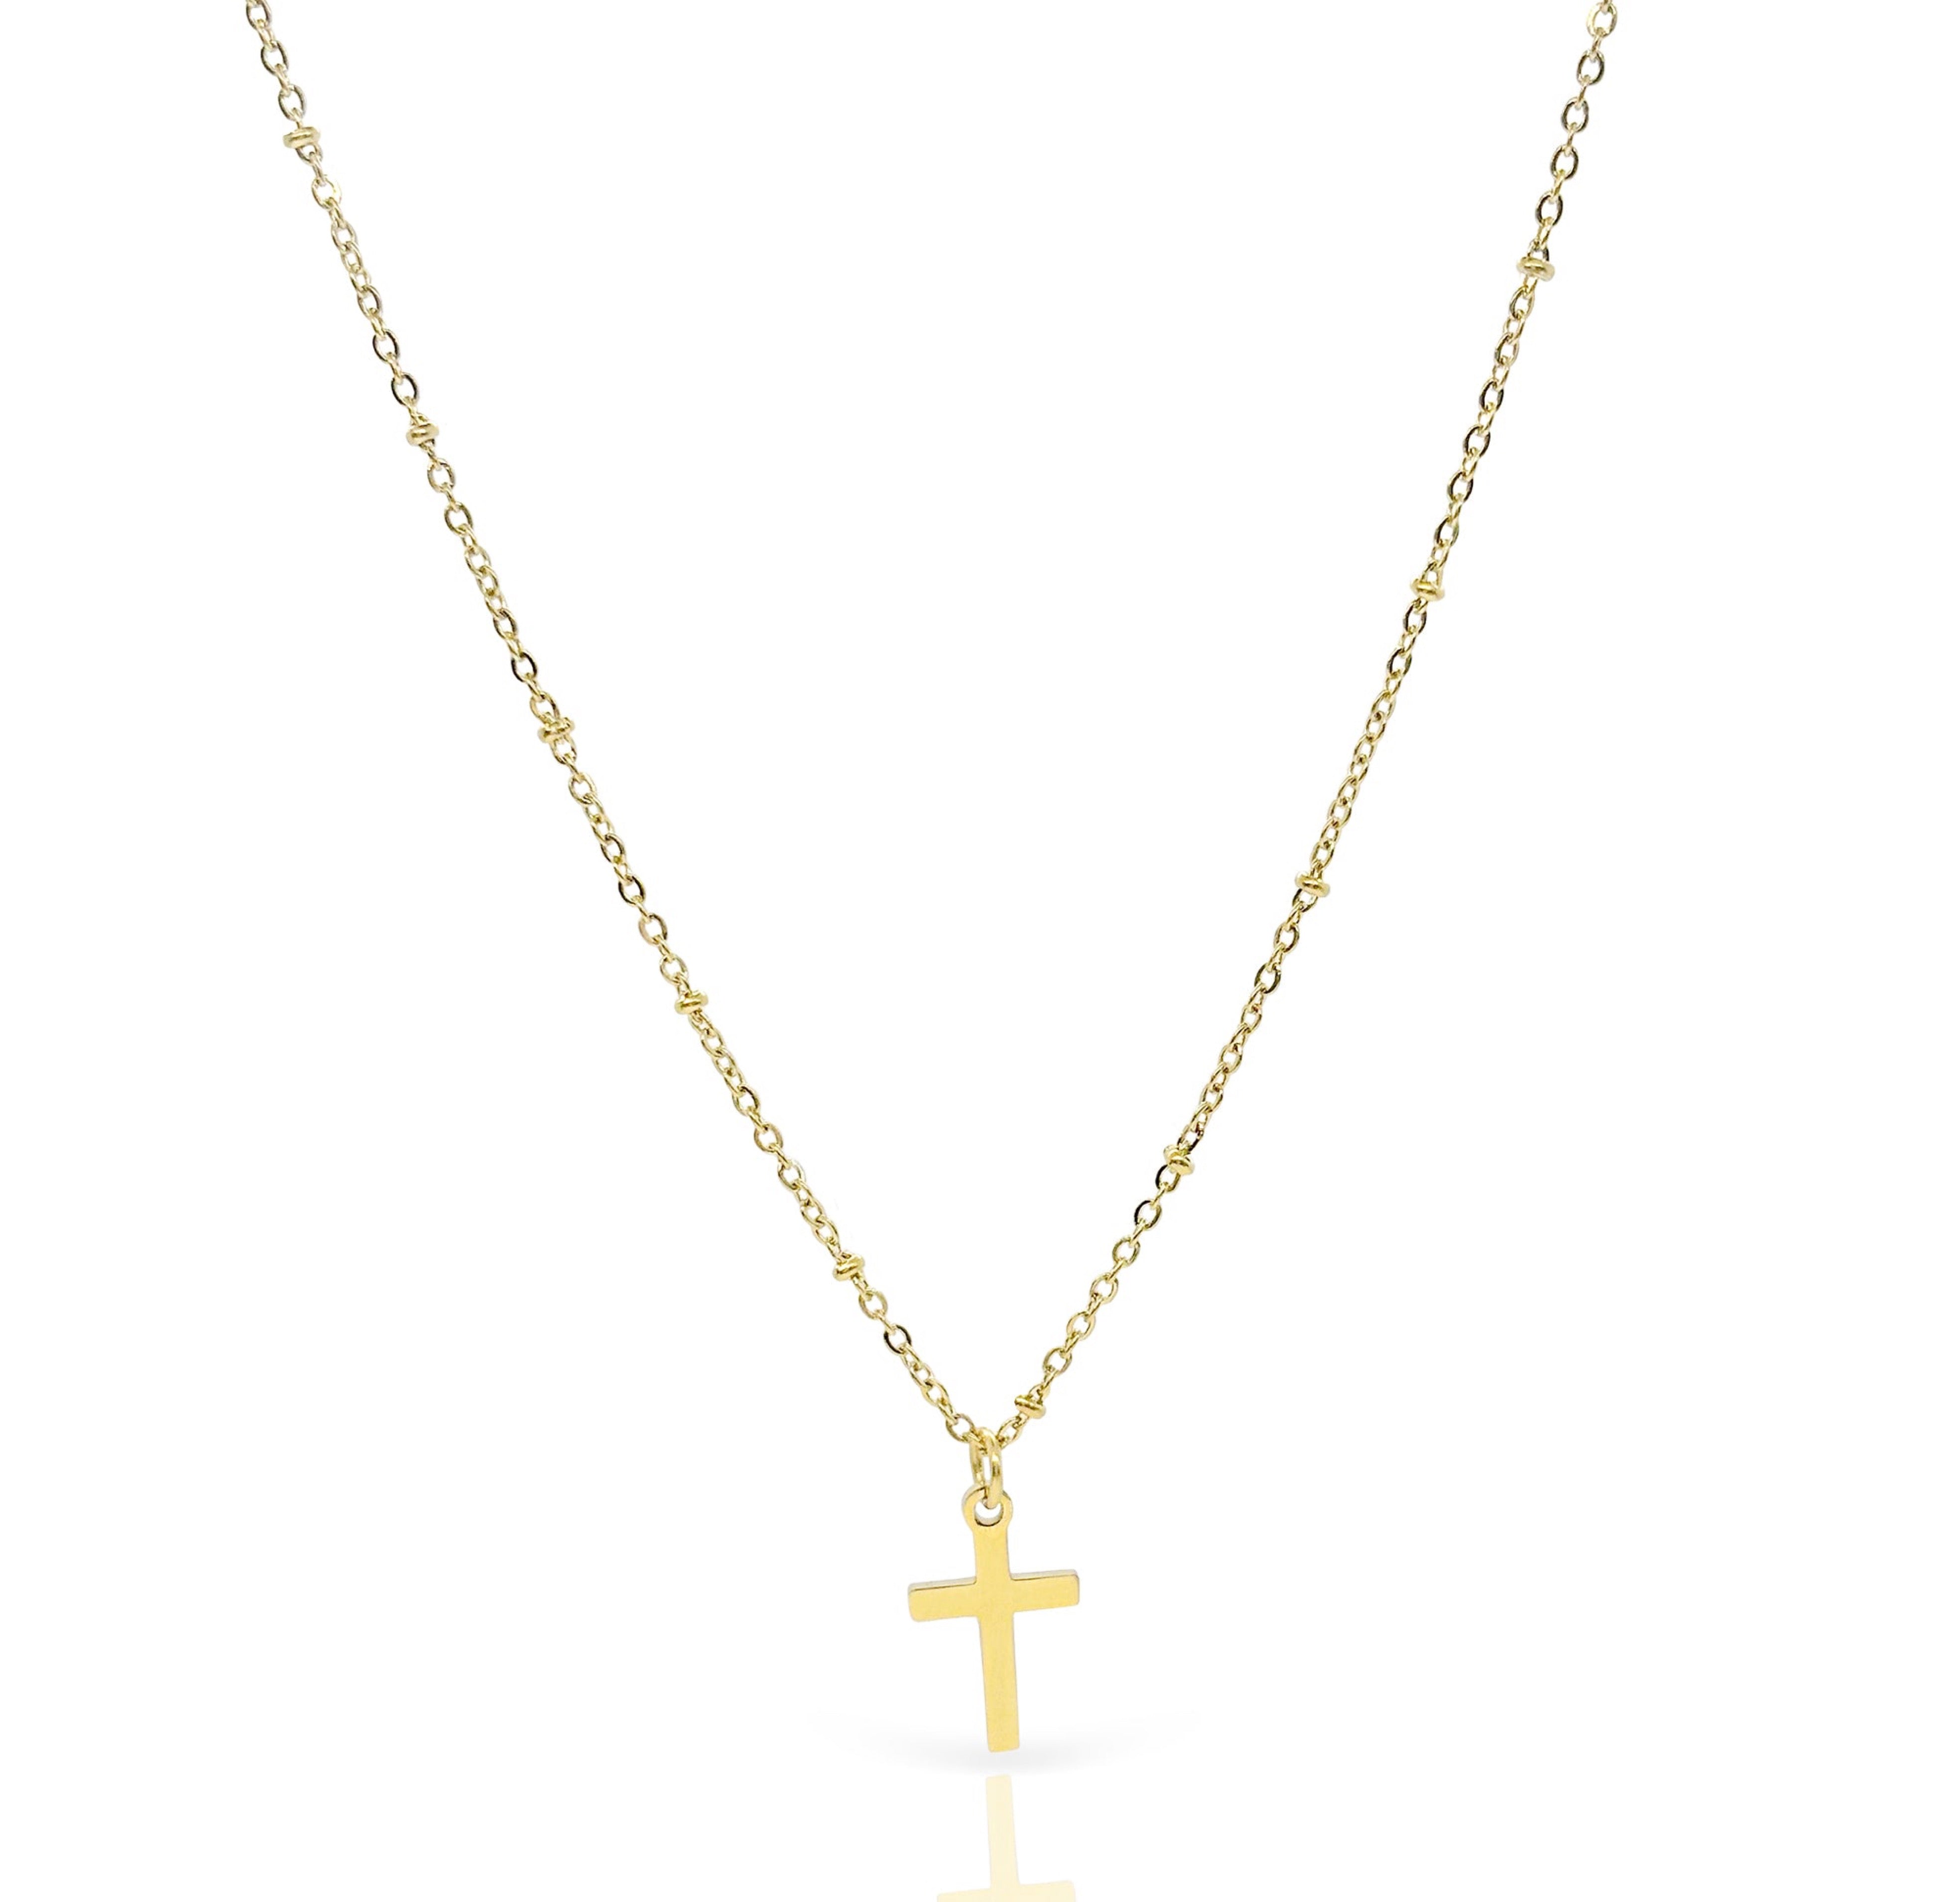 gold dainty cross necklace waterproof jewelry